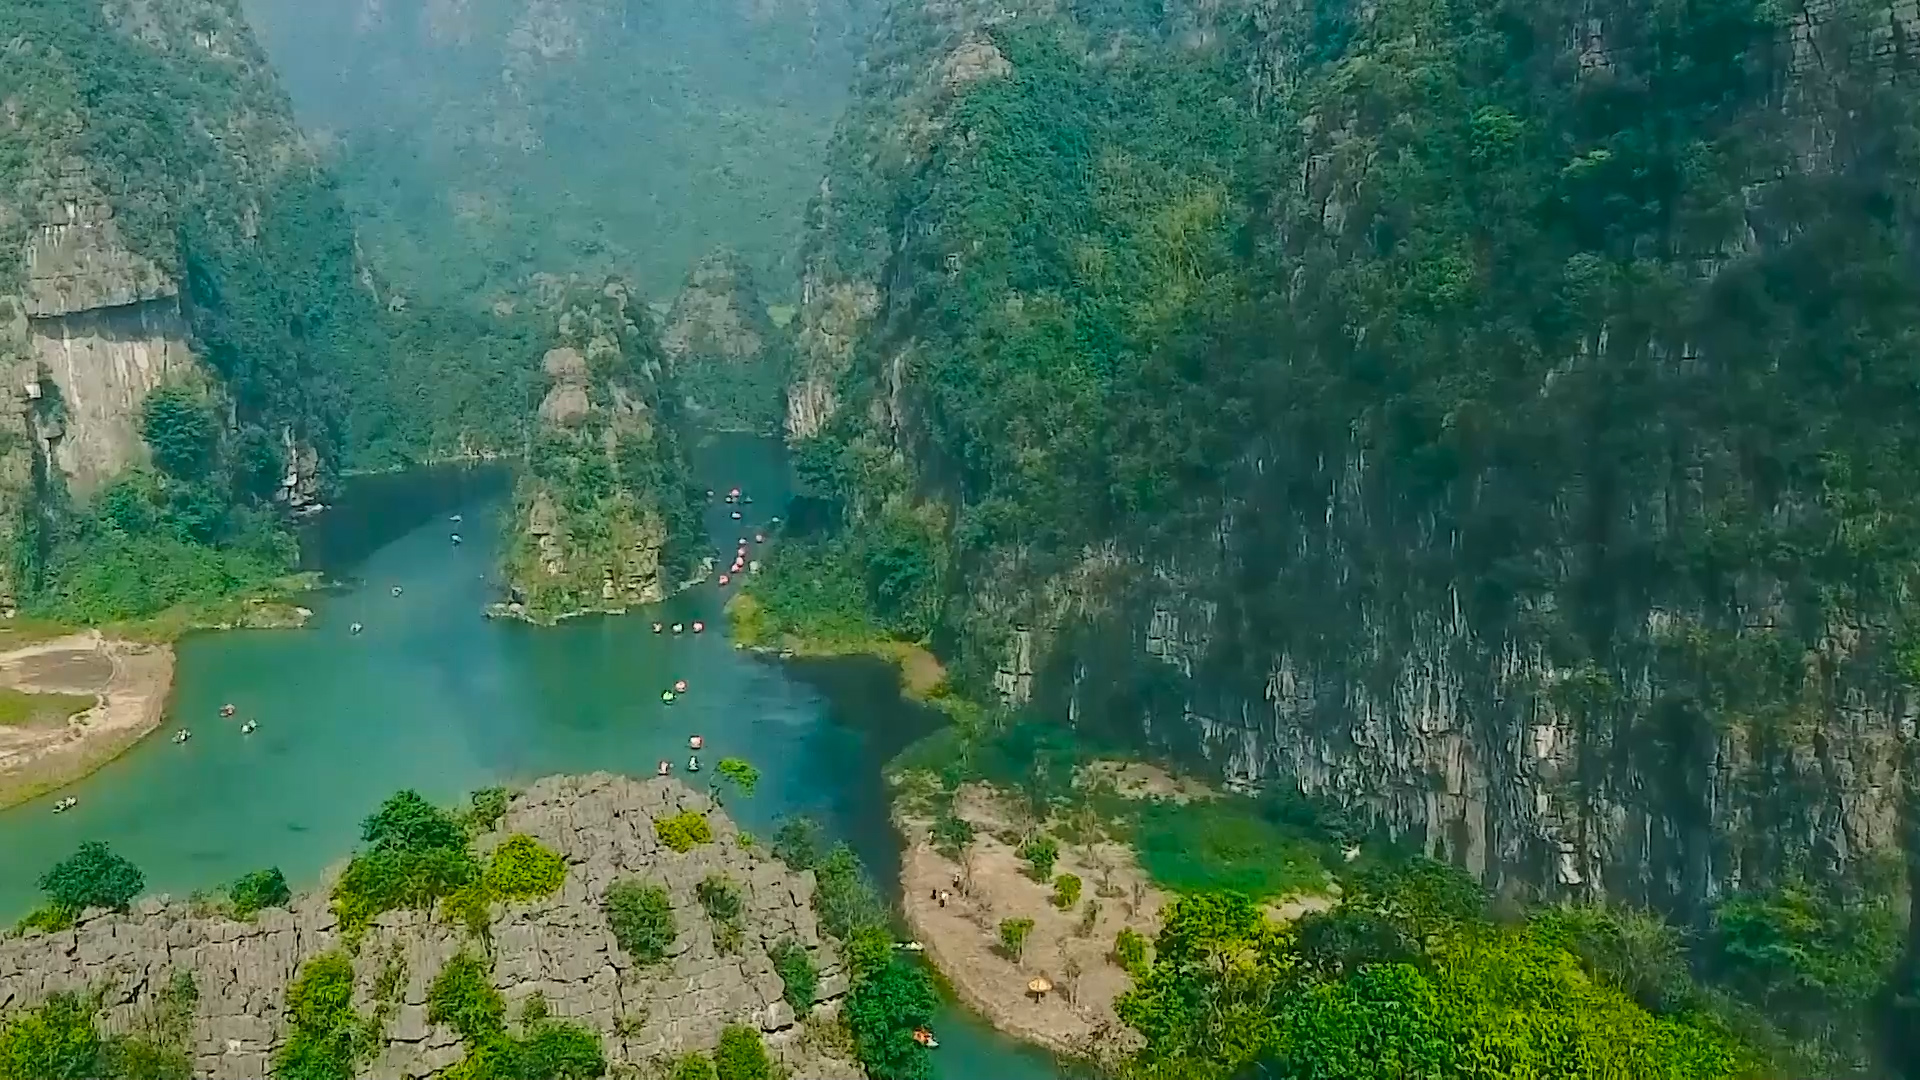 Tràng An là một trong những di sản văn hóa và thiên nhiên thế giới tại Việt Nam. Hãy đến với Tràng An để bắt đầu chuyến phiêu lưu đầy mê hoặc đến thăm những hang động, thác nước và cảnh quan ngoạn mục.